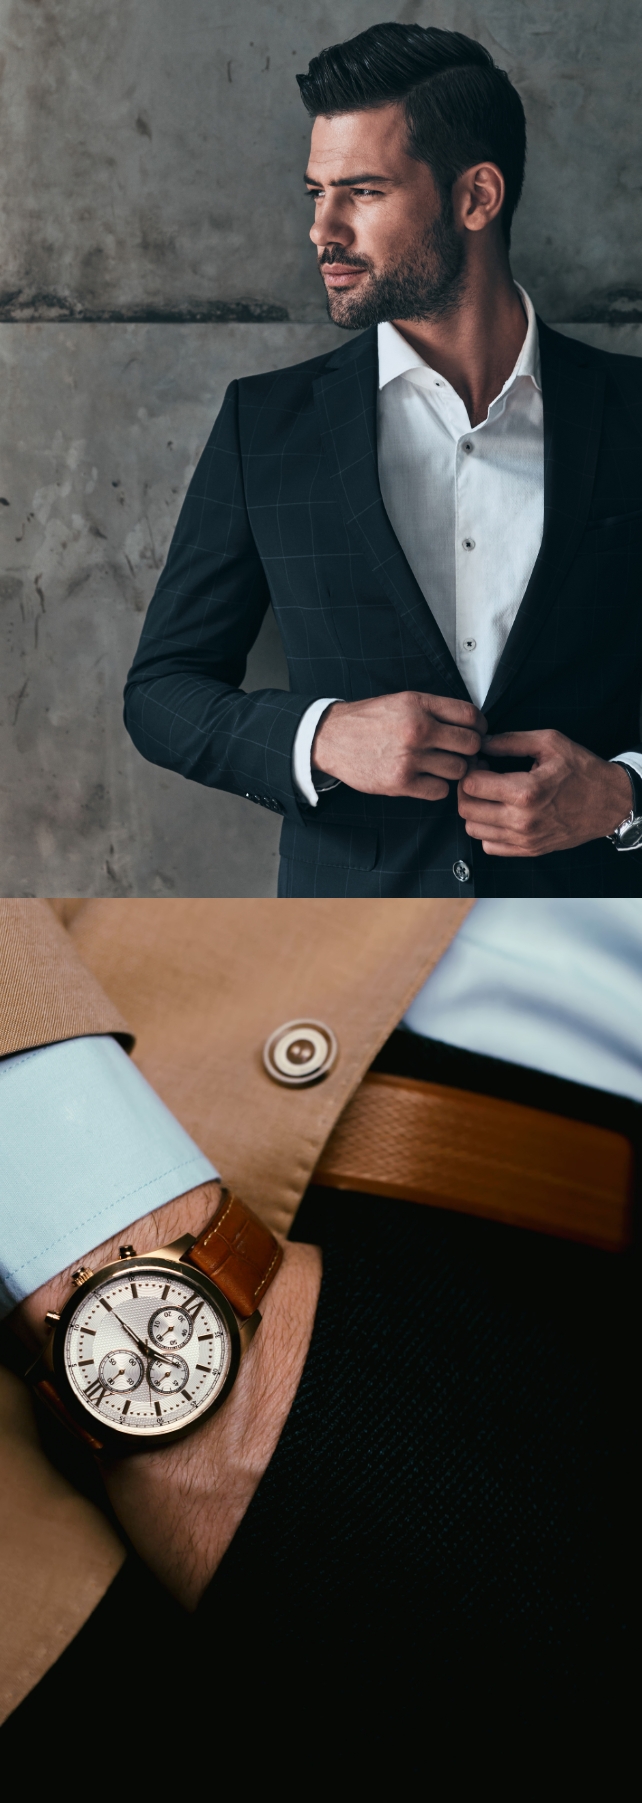 スーツ姿の男性と時計の写真